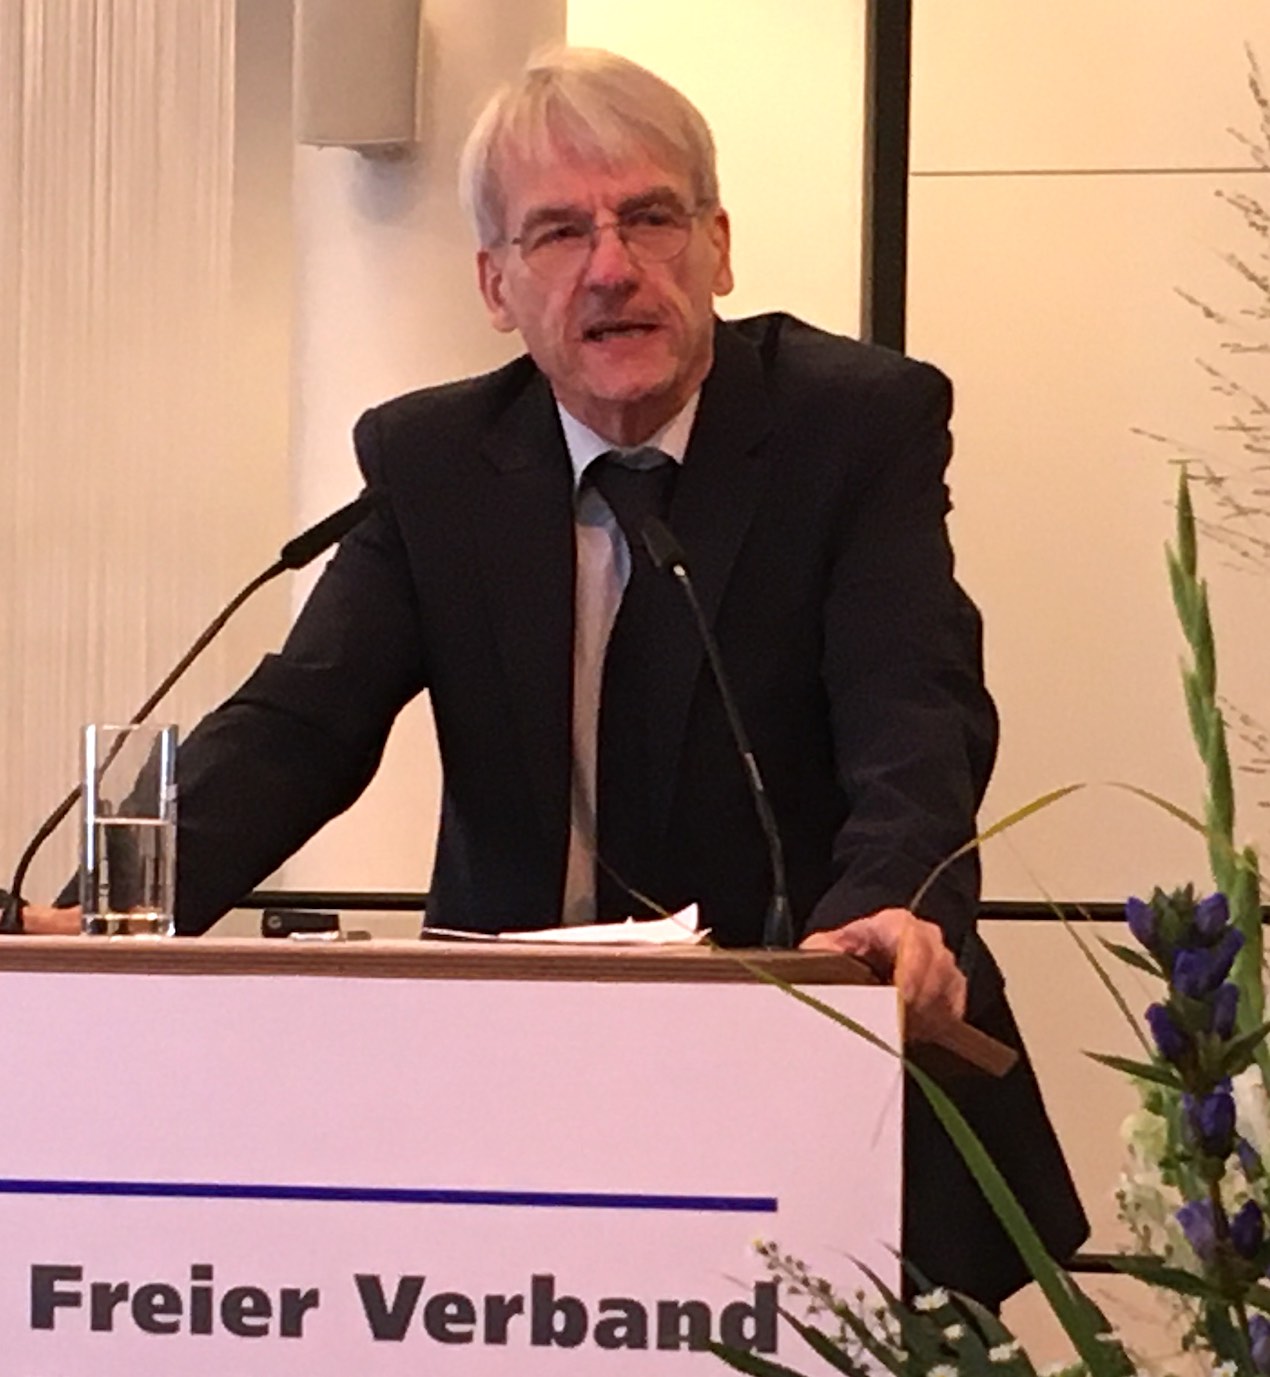 ZA Harald Schrader, Bundesvorsitzender des FVDZ